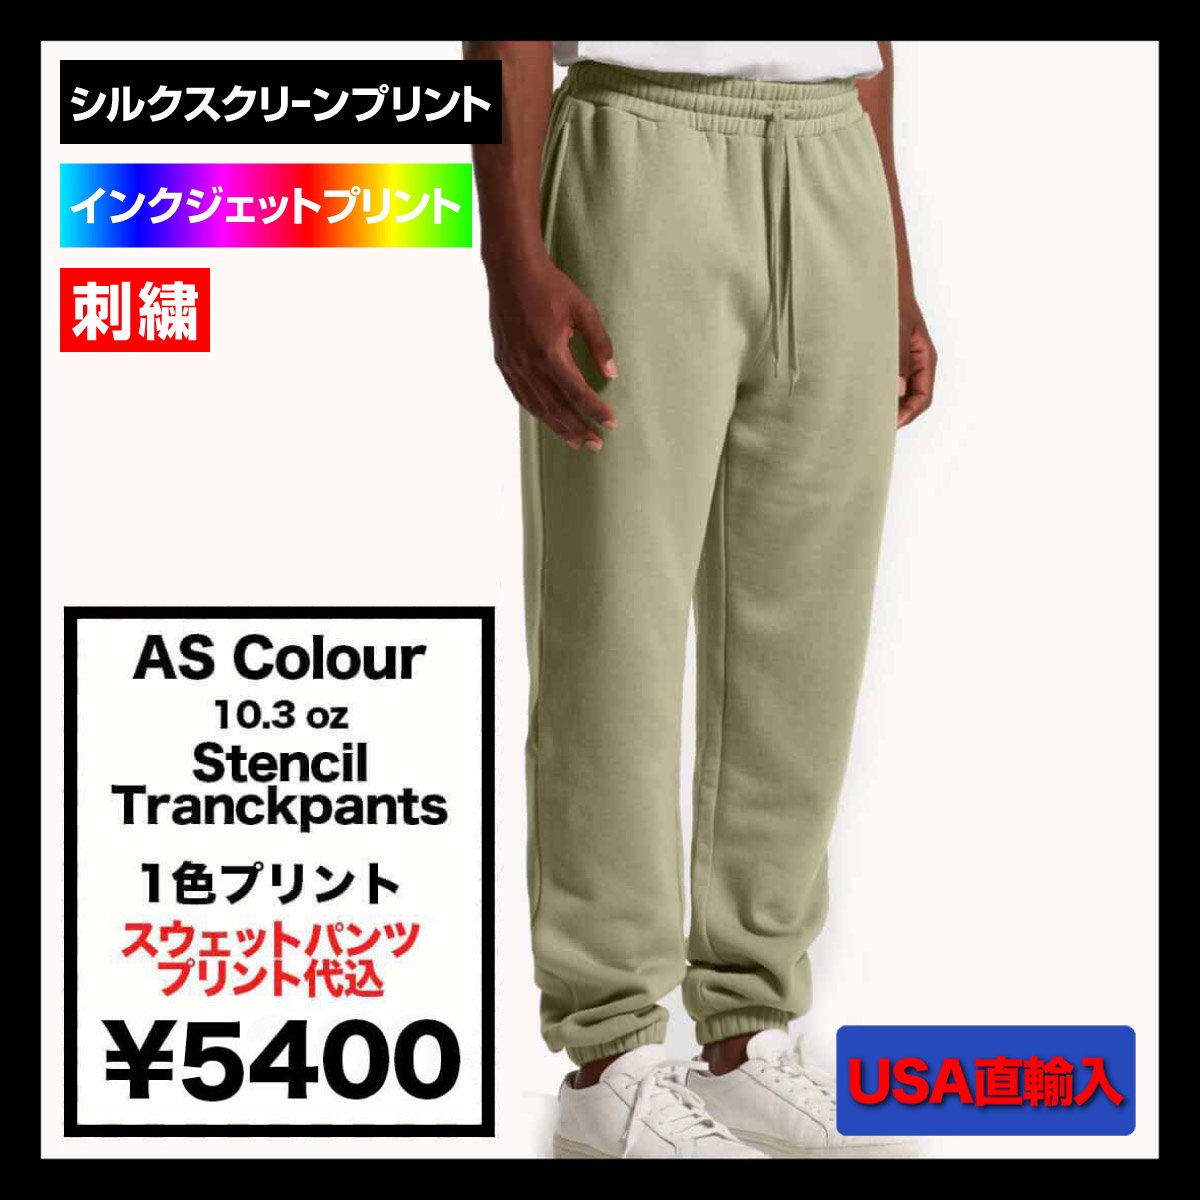 【在庫限り】 AS Colour アズカラー 10.3 oz Stencil Tranckpants (品番5921)